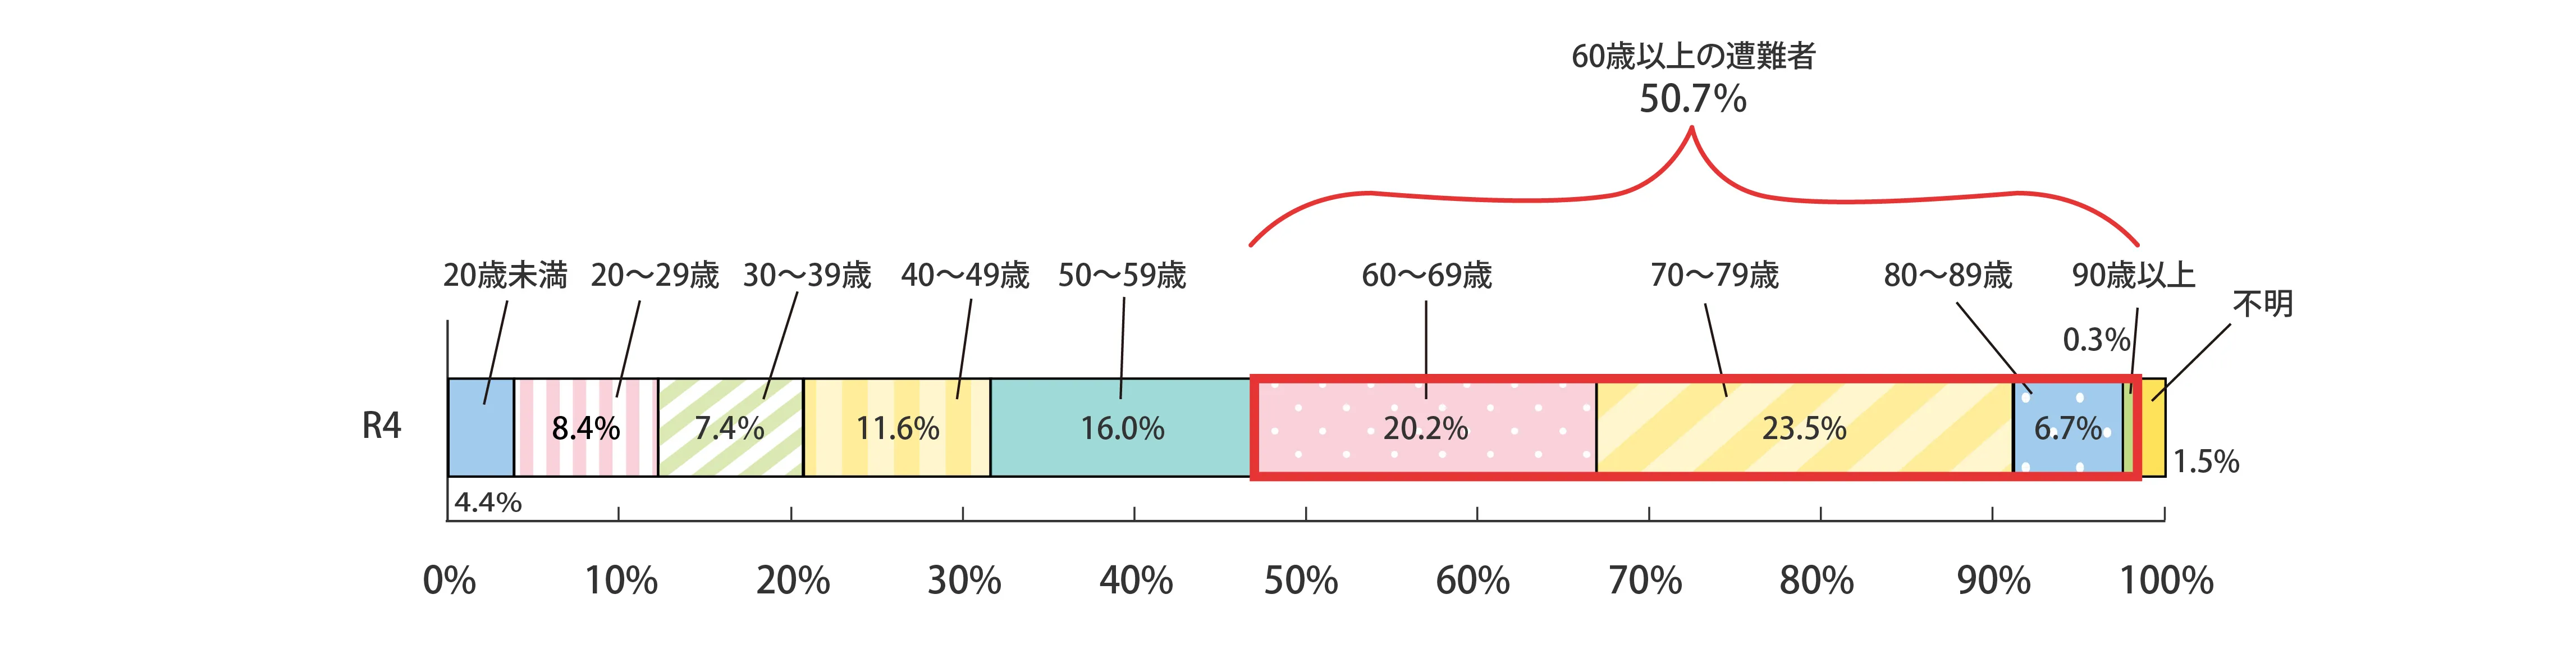 山岳遭難者の年齢層別構成比のグラフ。内訳は本文に記載。